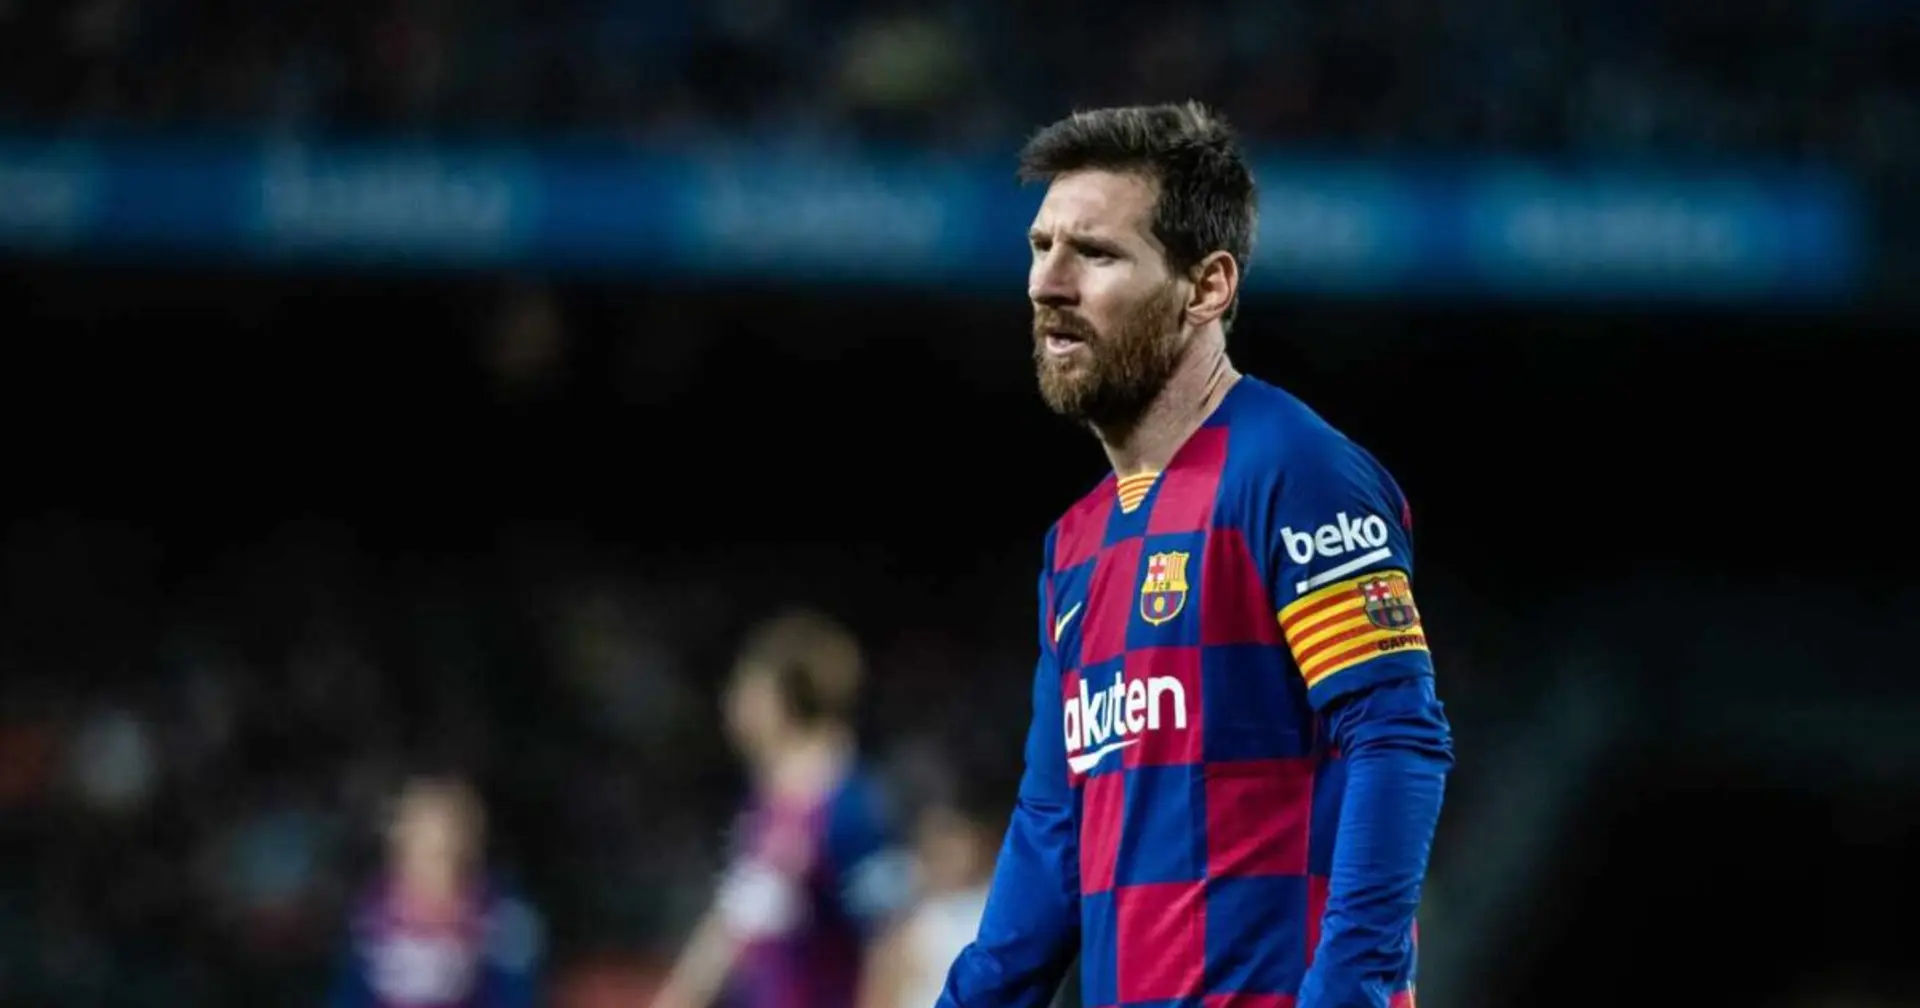 ¿Qué hay detrás del proyecto ganador que pide Messi?